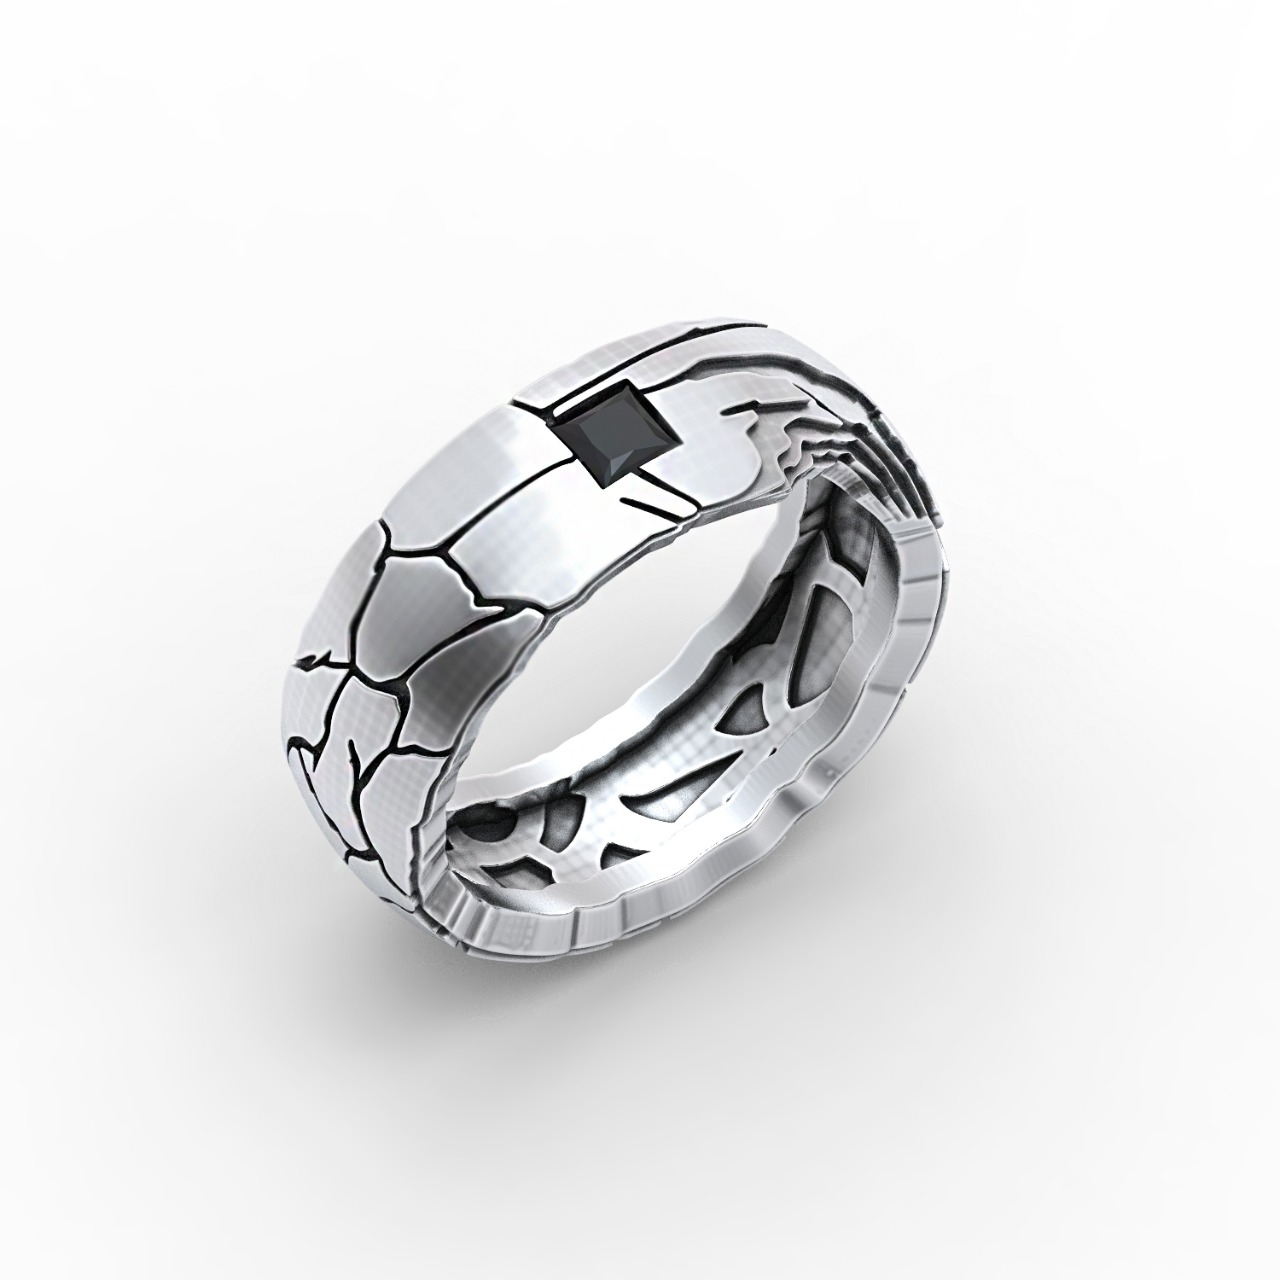 Мужское кольцо с черным бриллиантом(0,85 ct.) из платины Купить в Москве